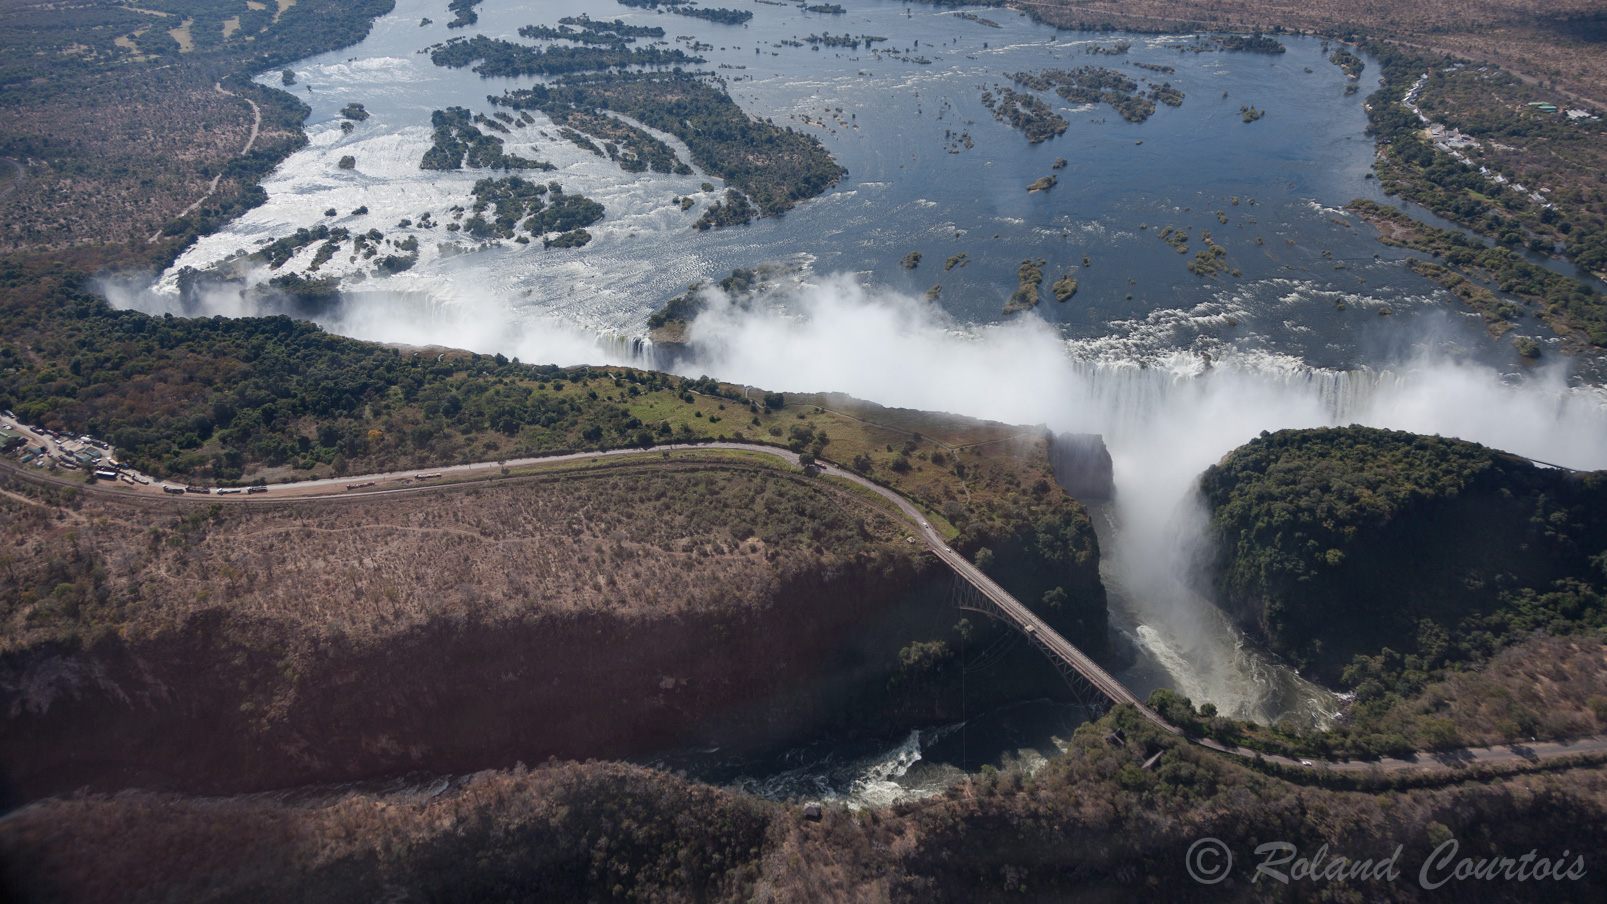 Vue d'ensemble des chutes. On distingue en avant-plan le pont reliant le Zimbabwe et la Zambie.